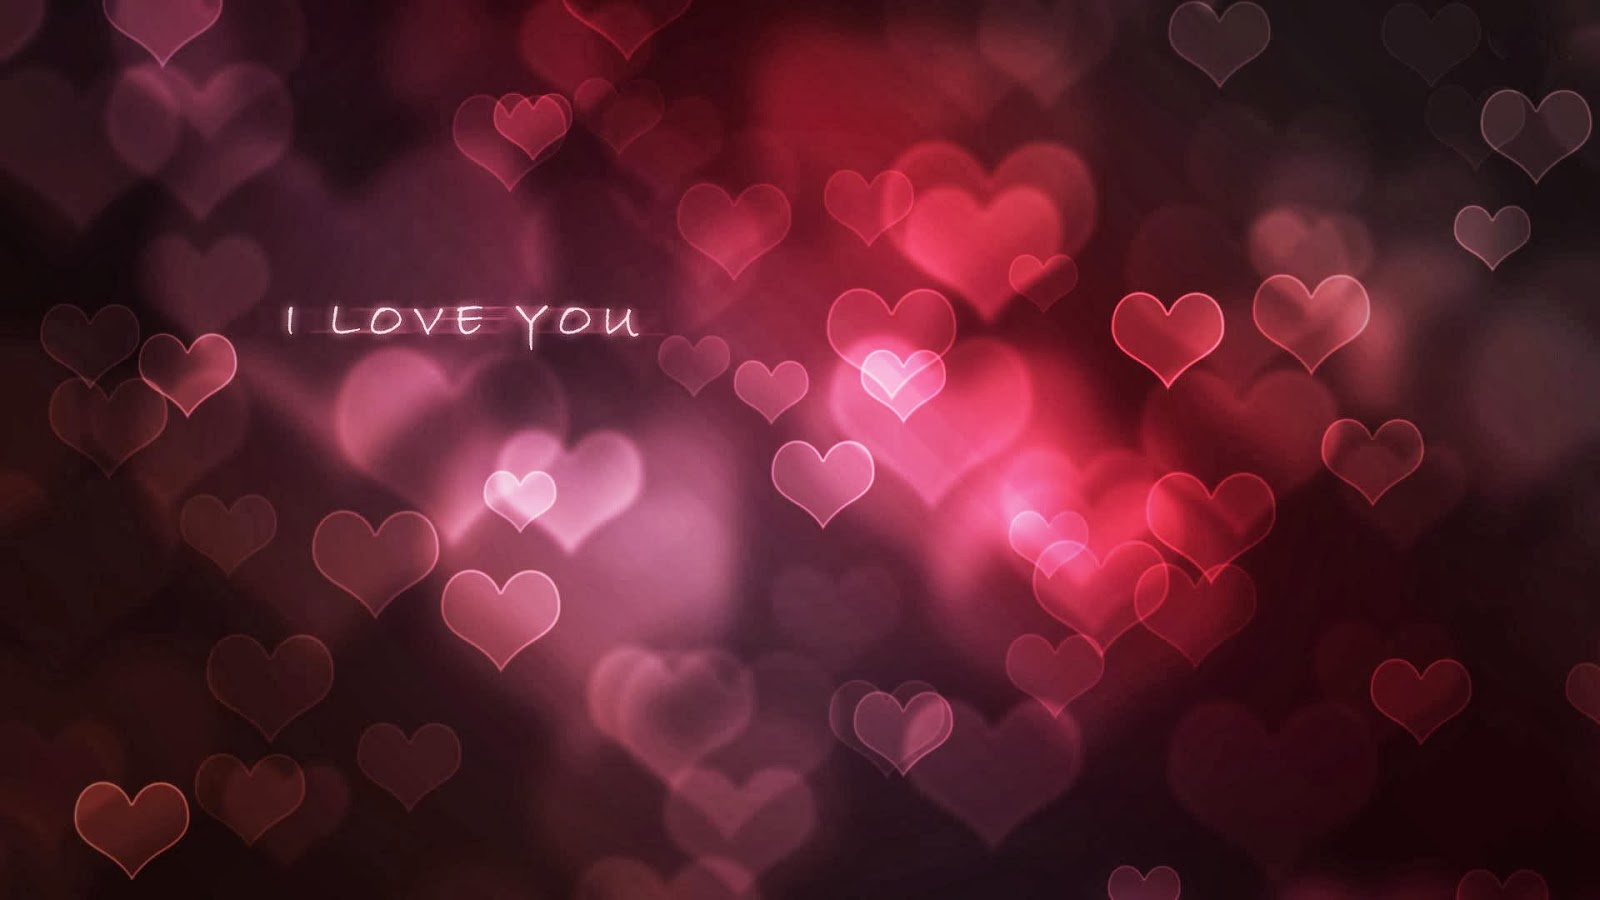 fonds d'écran d'amour avec des messages,cœur,rose,rouge,texte,la saint valentin